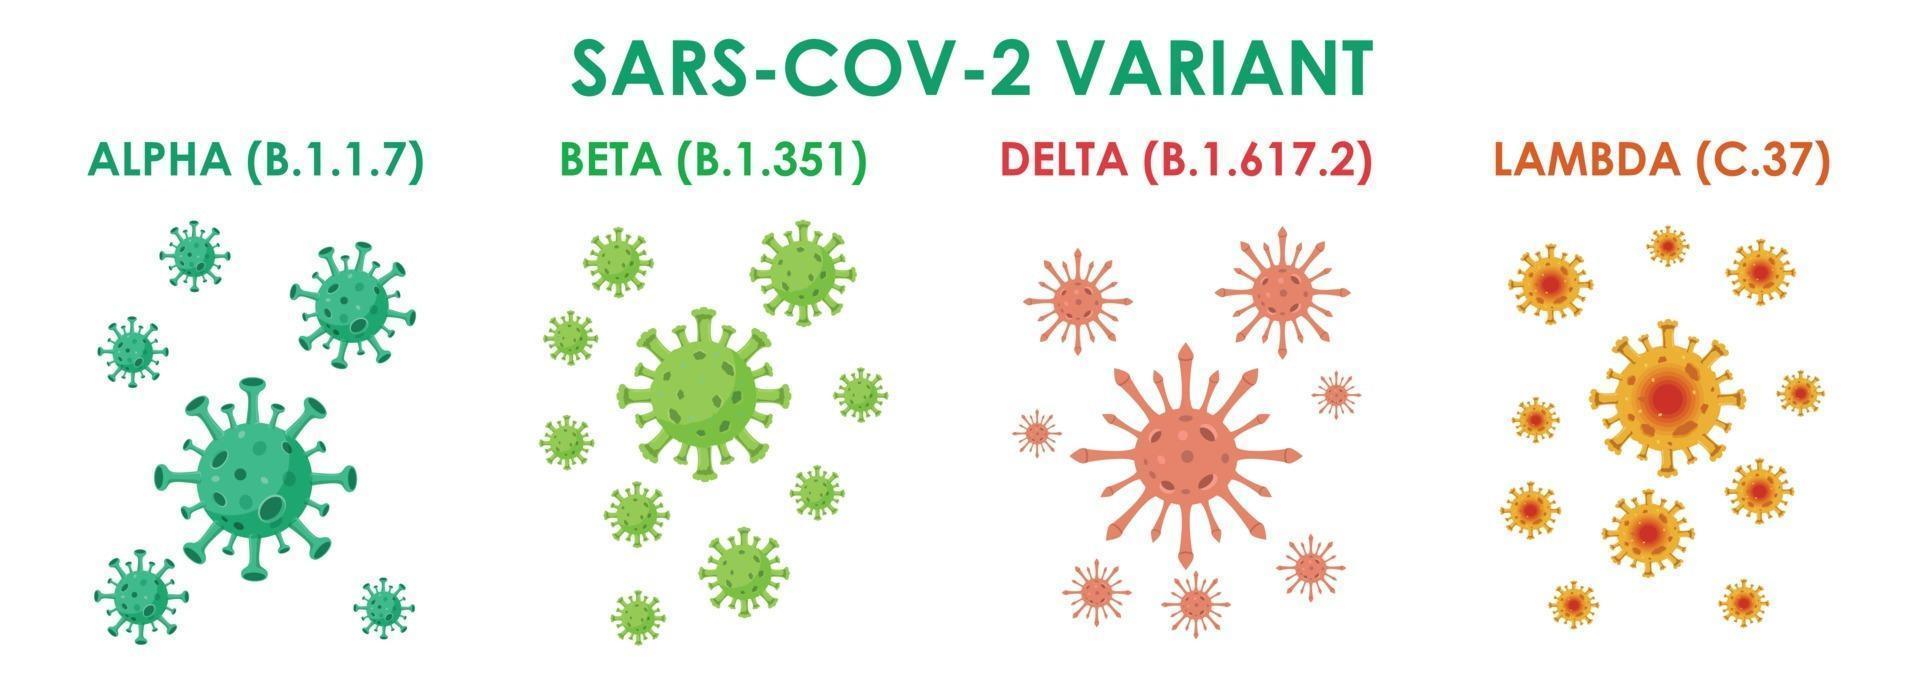 sars-cov-2 variante virus covid-19 illustrazione vettore